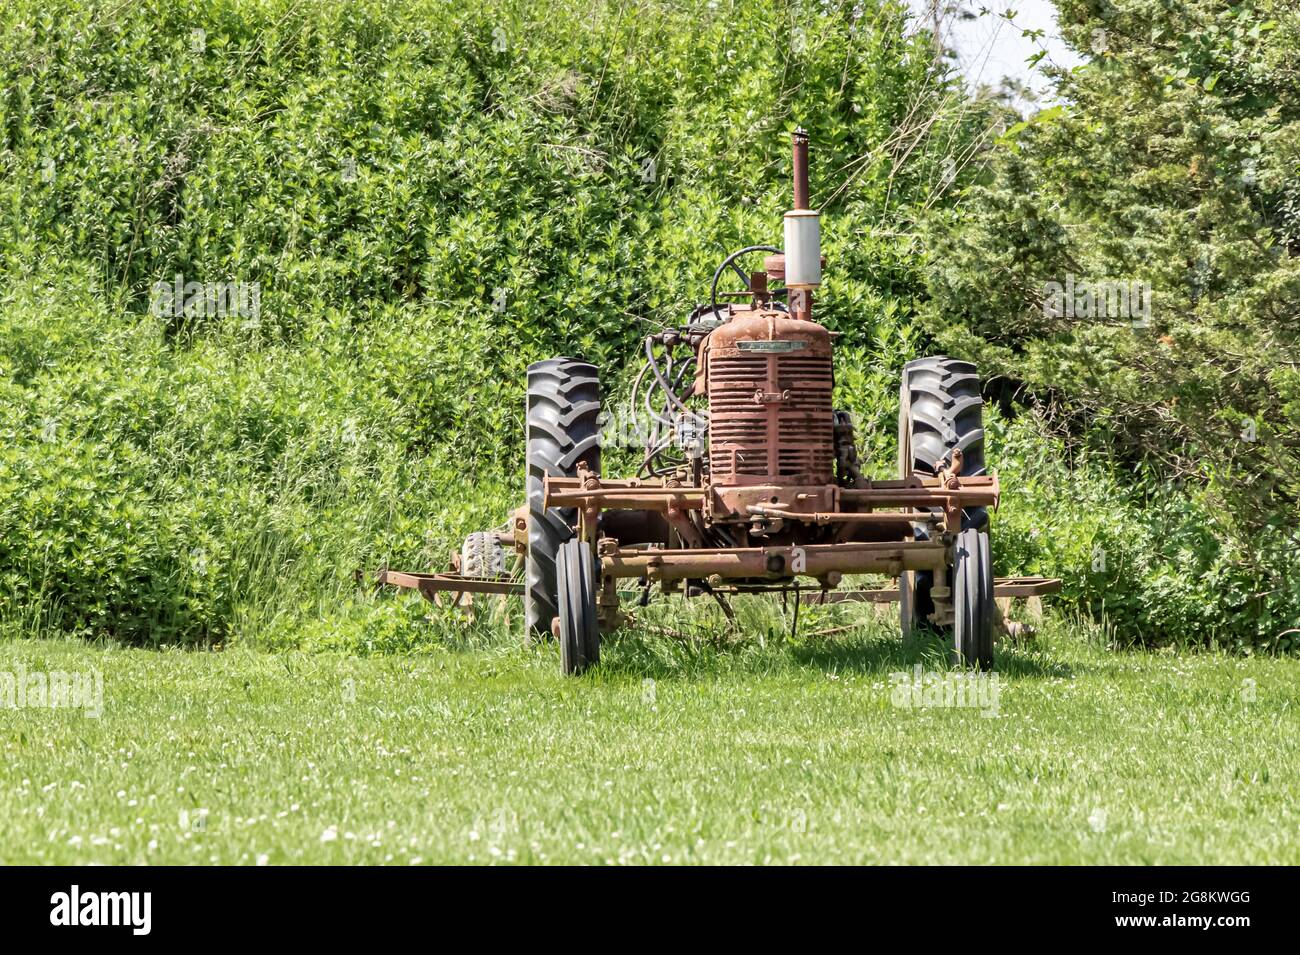 Vecchio trattore agricolo rosso Farmall seduto in un campo Foto Stock